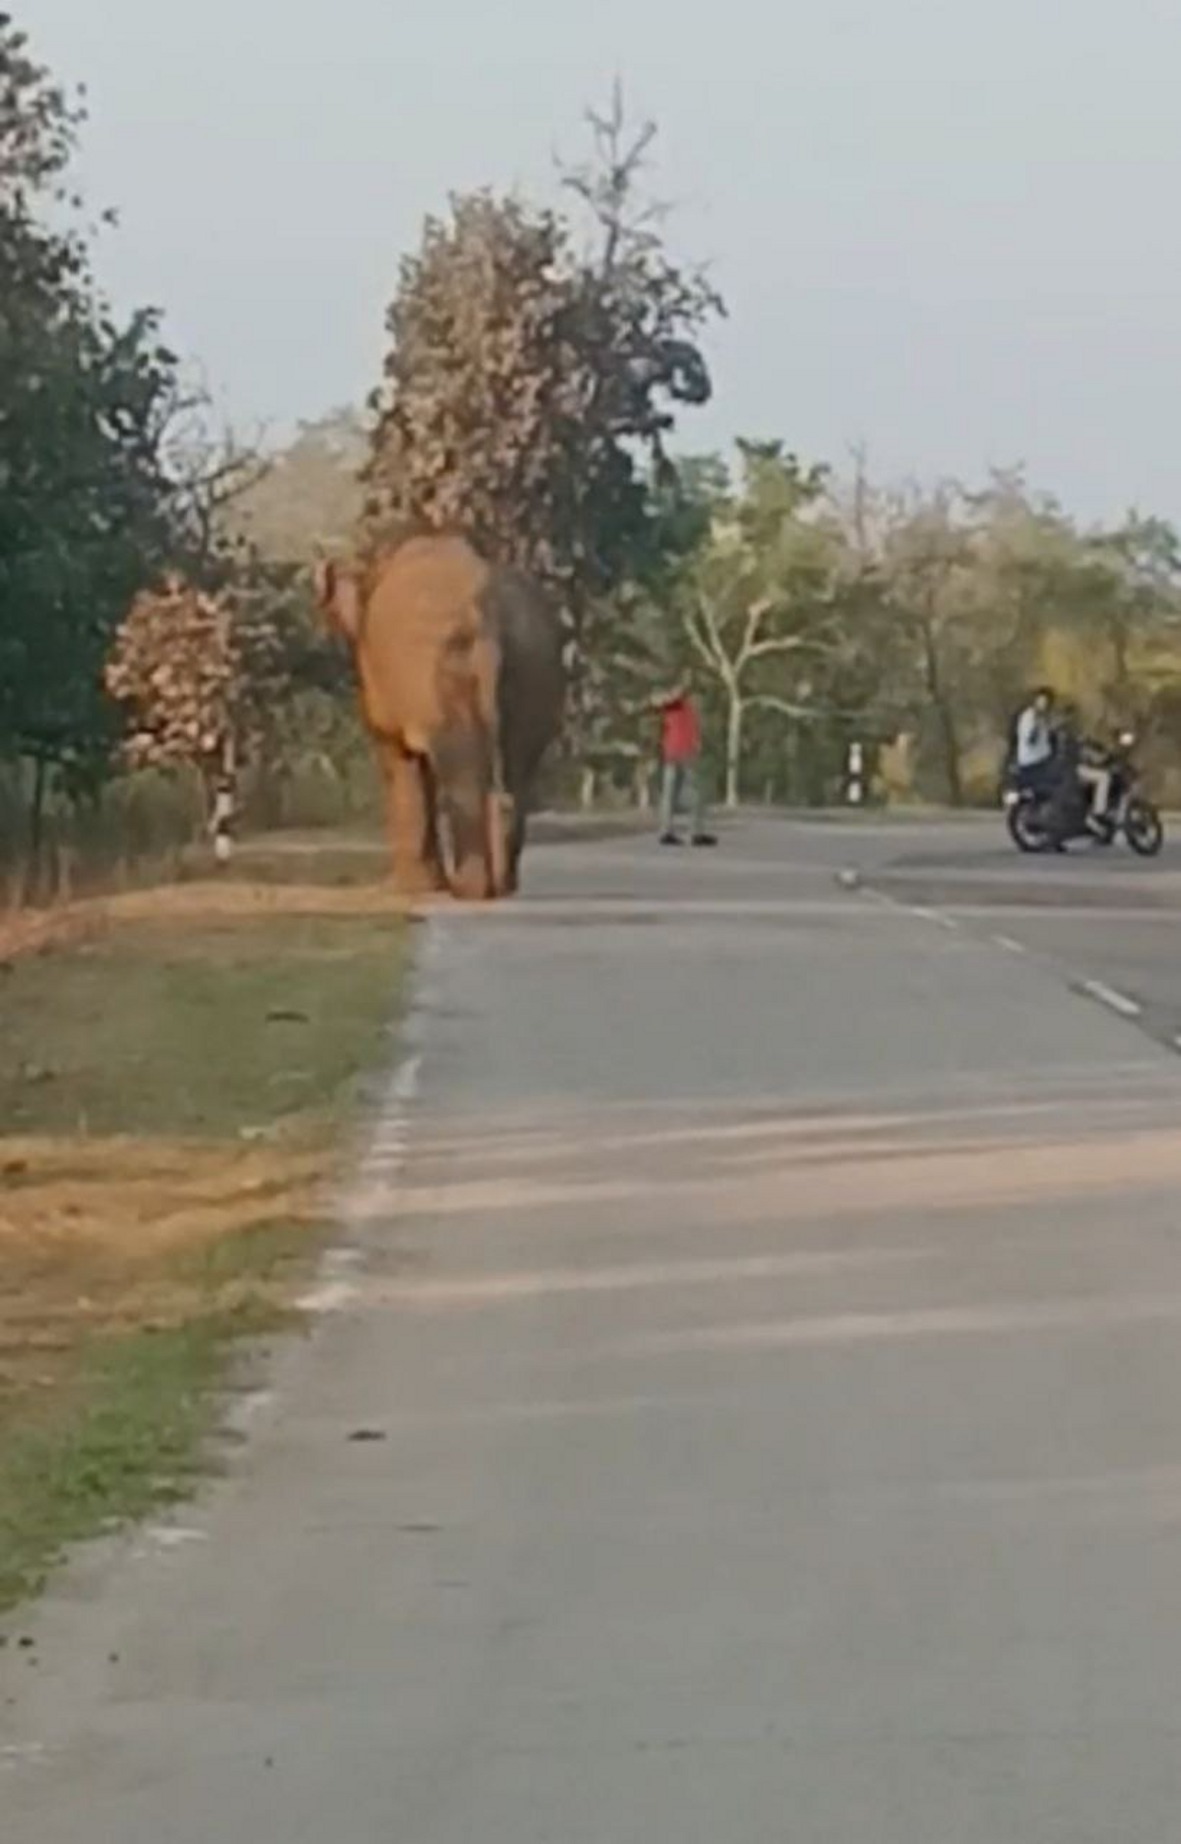 Video Story : जंगल से निकलकर अचानक सडक़ हाथी को विचरण करता देख थम गए लोगों के
वाहनों के पहिये